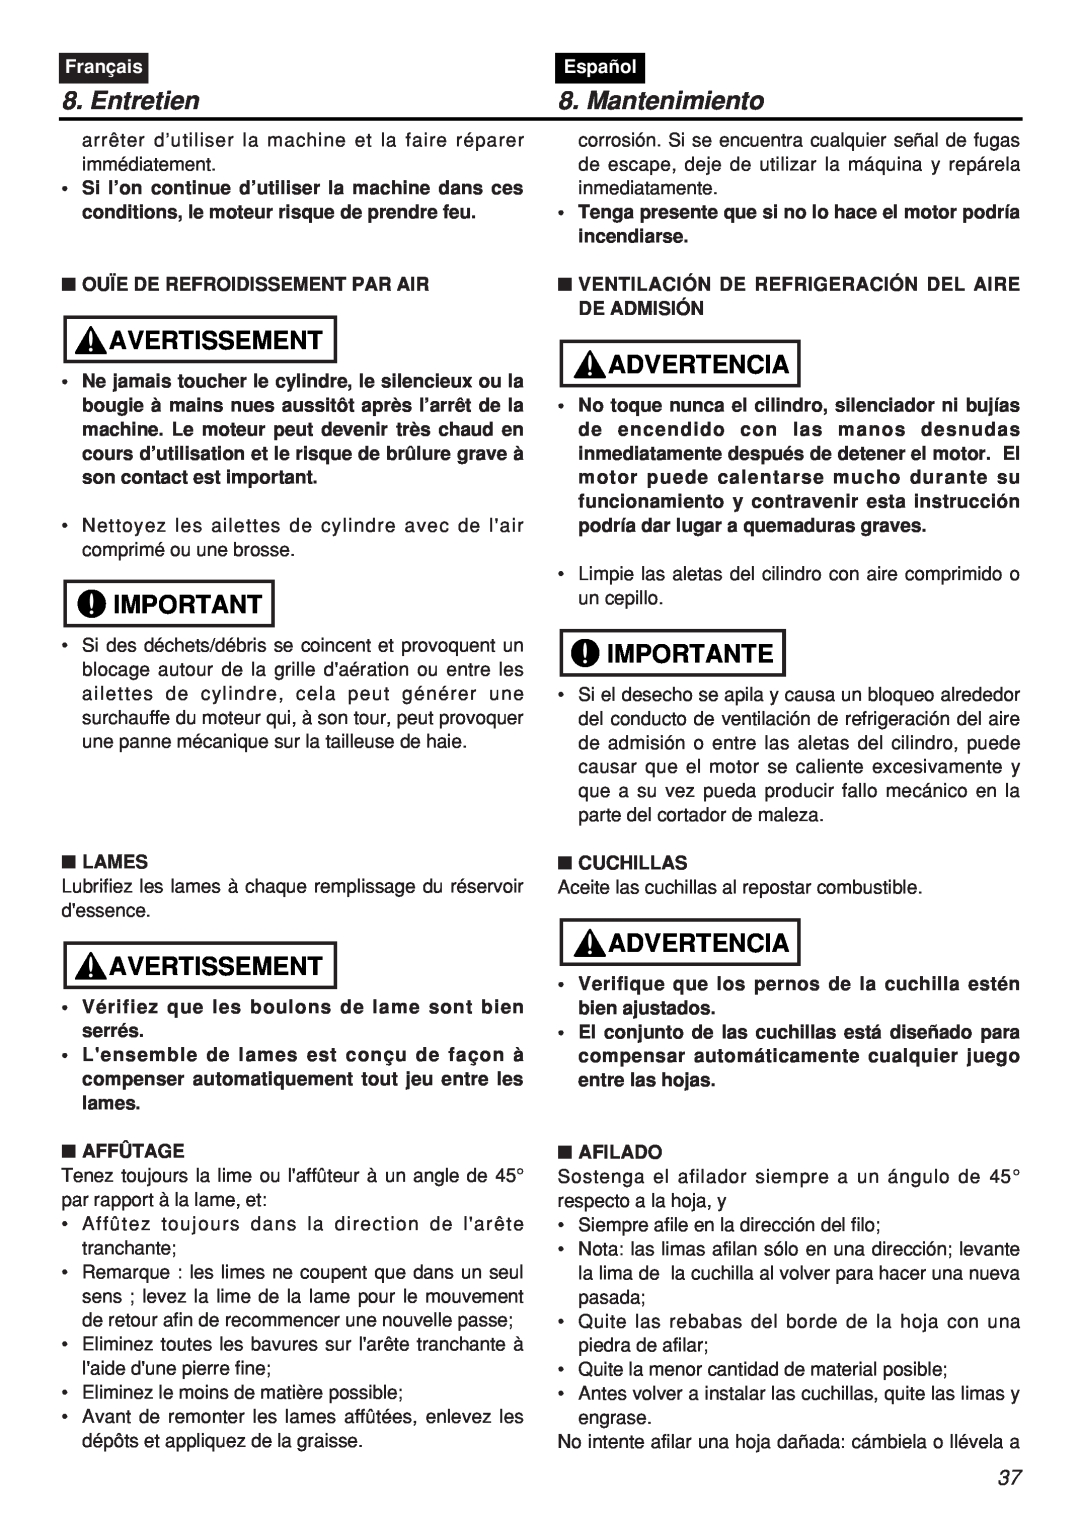 Zenoah CHTZ2401L-CA, CHTZ2401-CA manual Entretien, Mantenimiento, Avertissement, Advertencia, Importante, Français, Español 